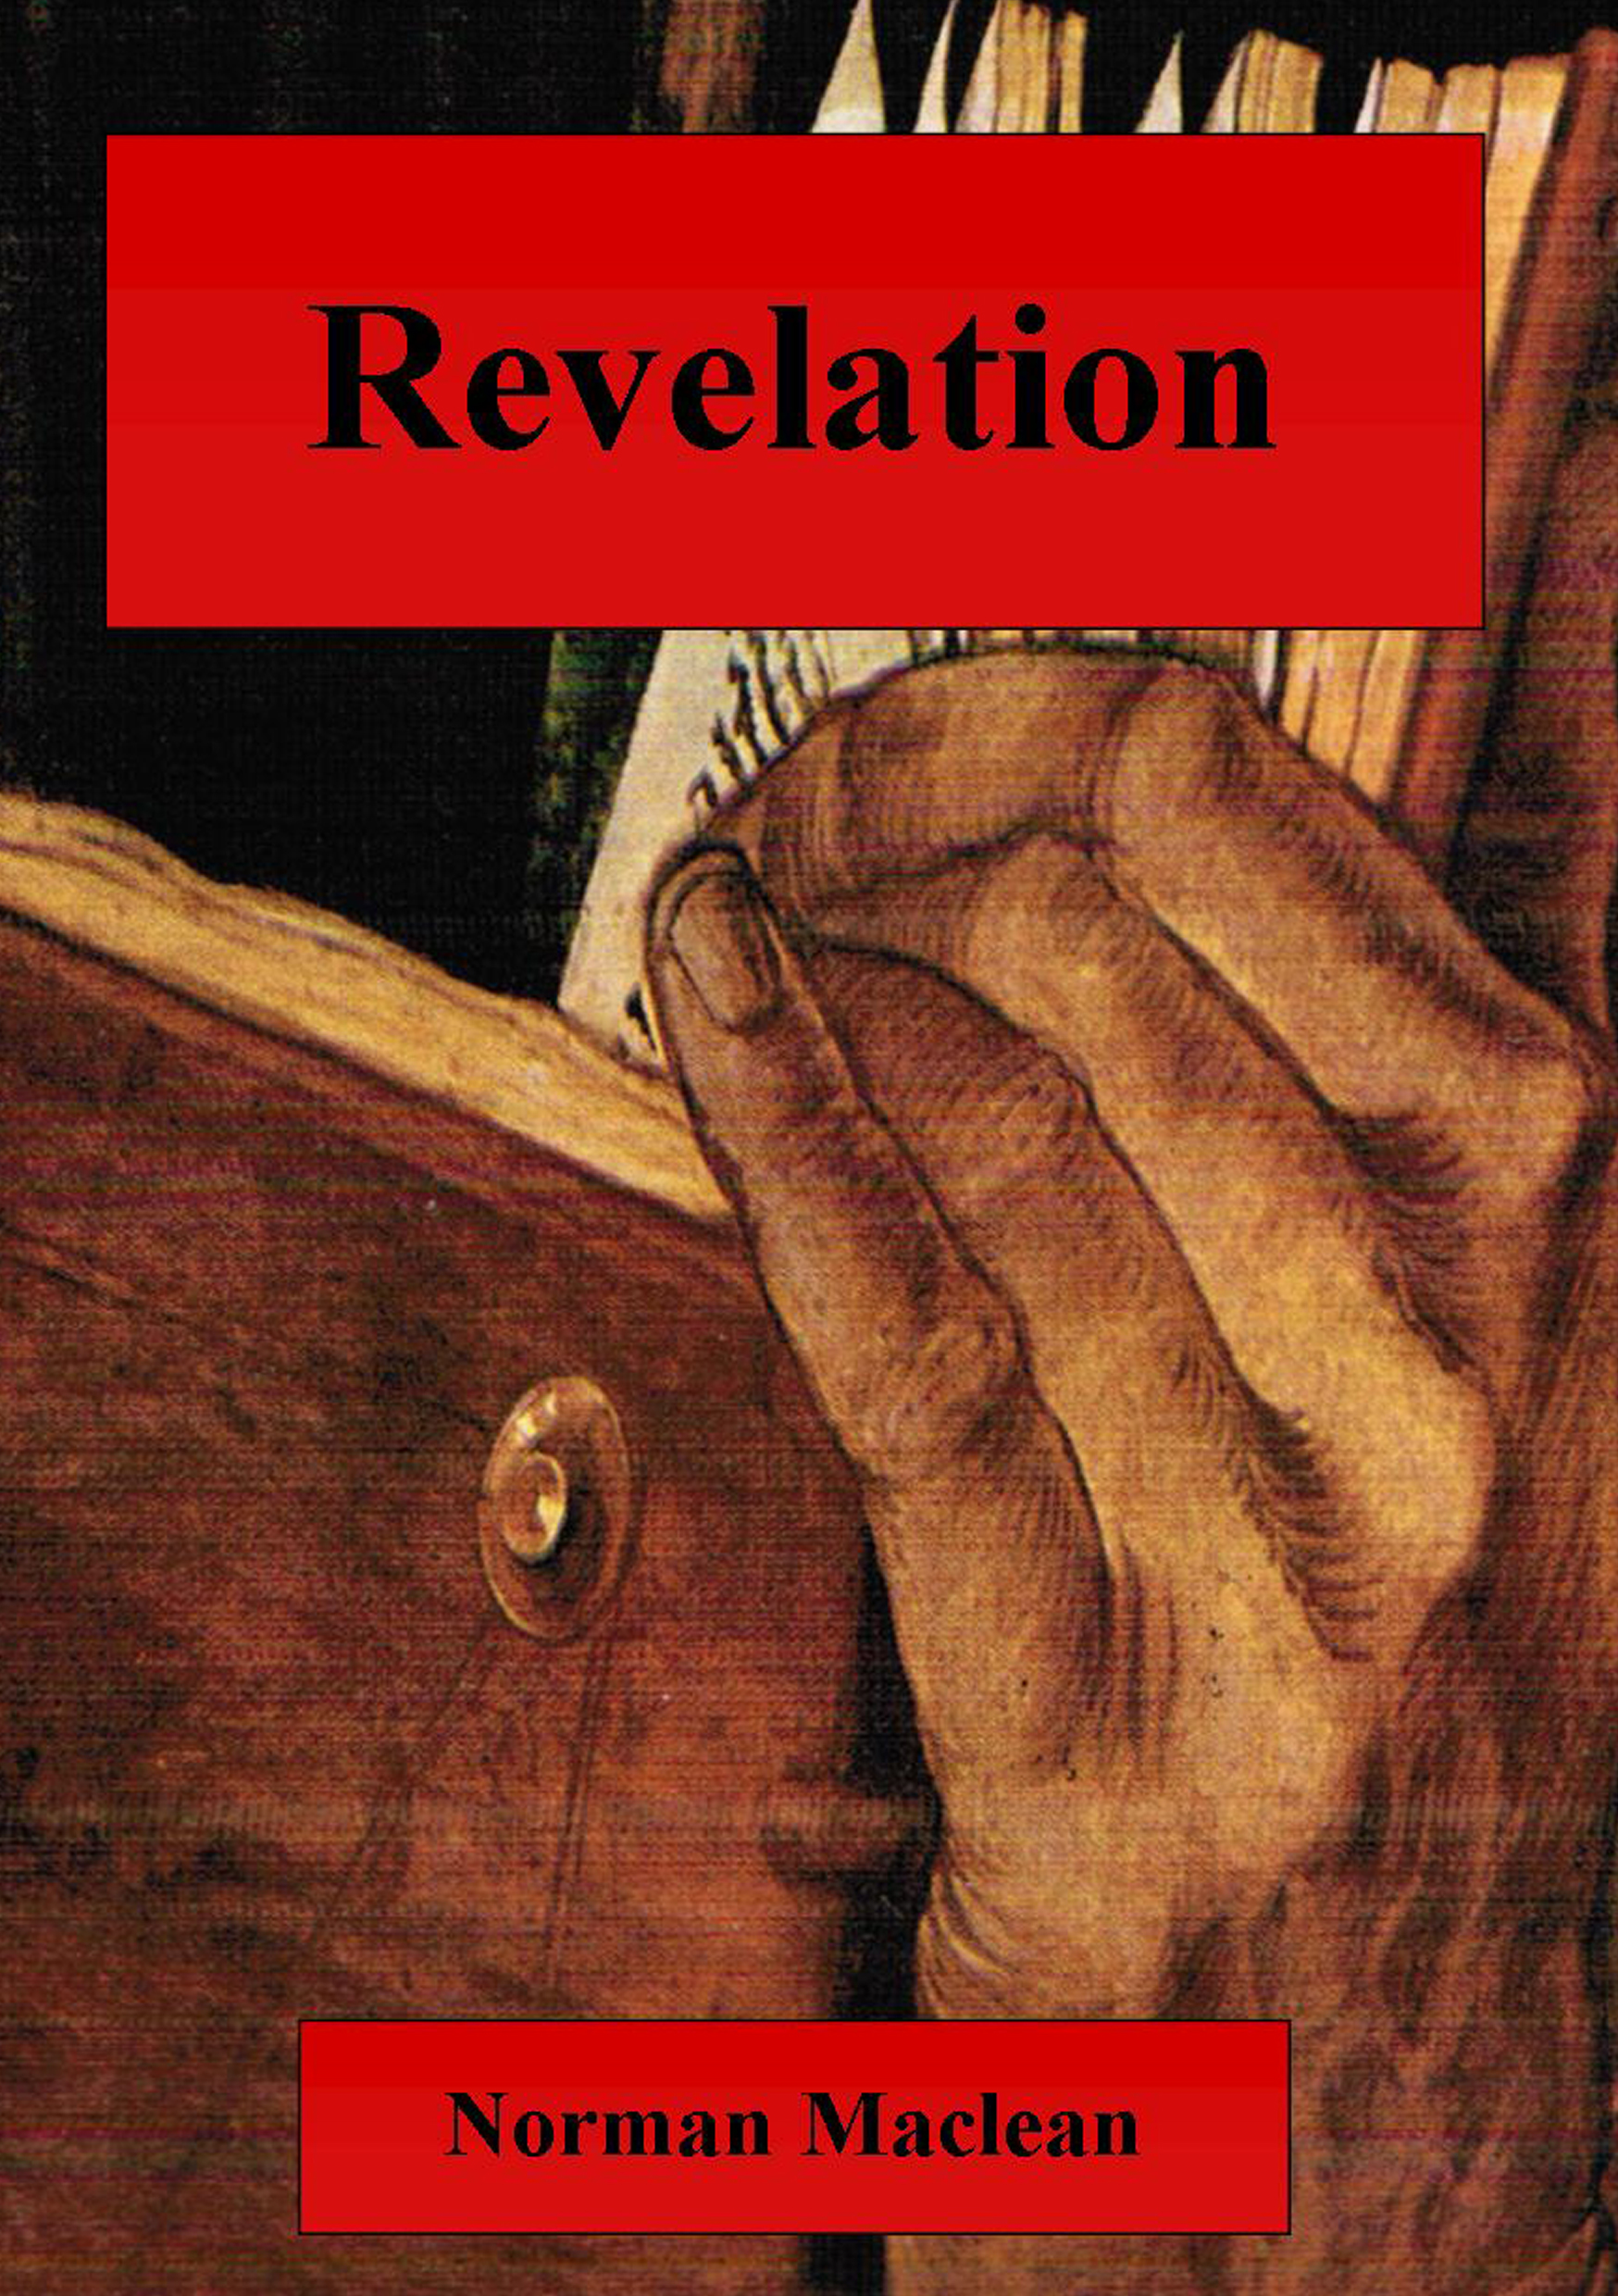 Revelation Book Cover (1)